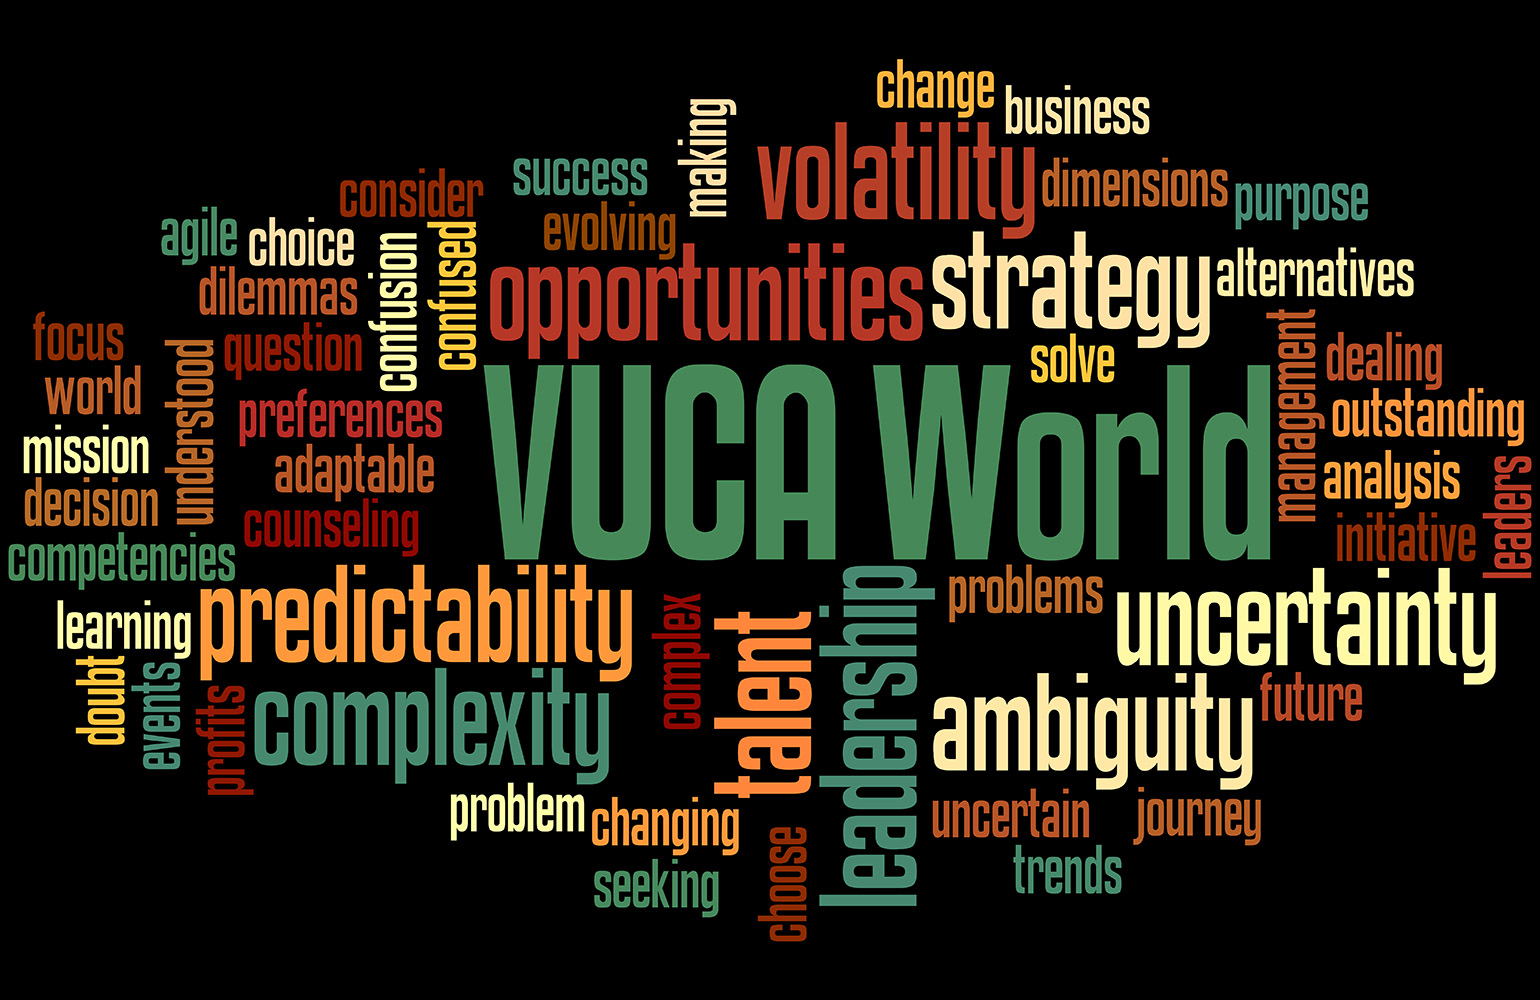 ilustracja do artykułu: #VUCA.